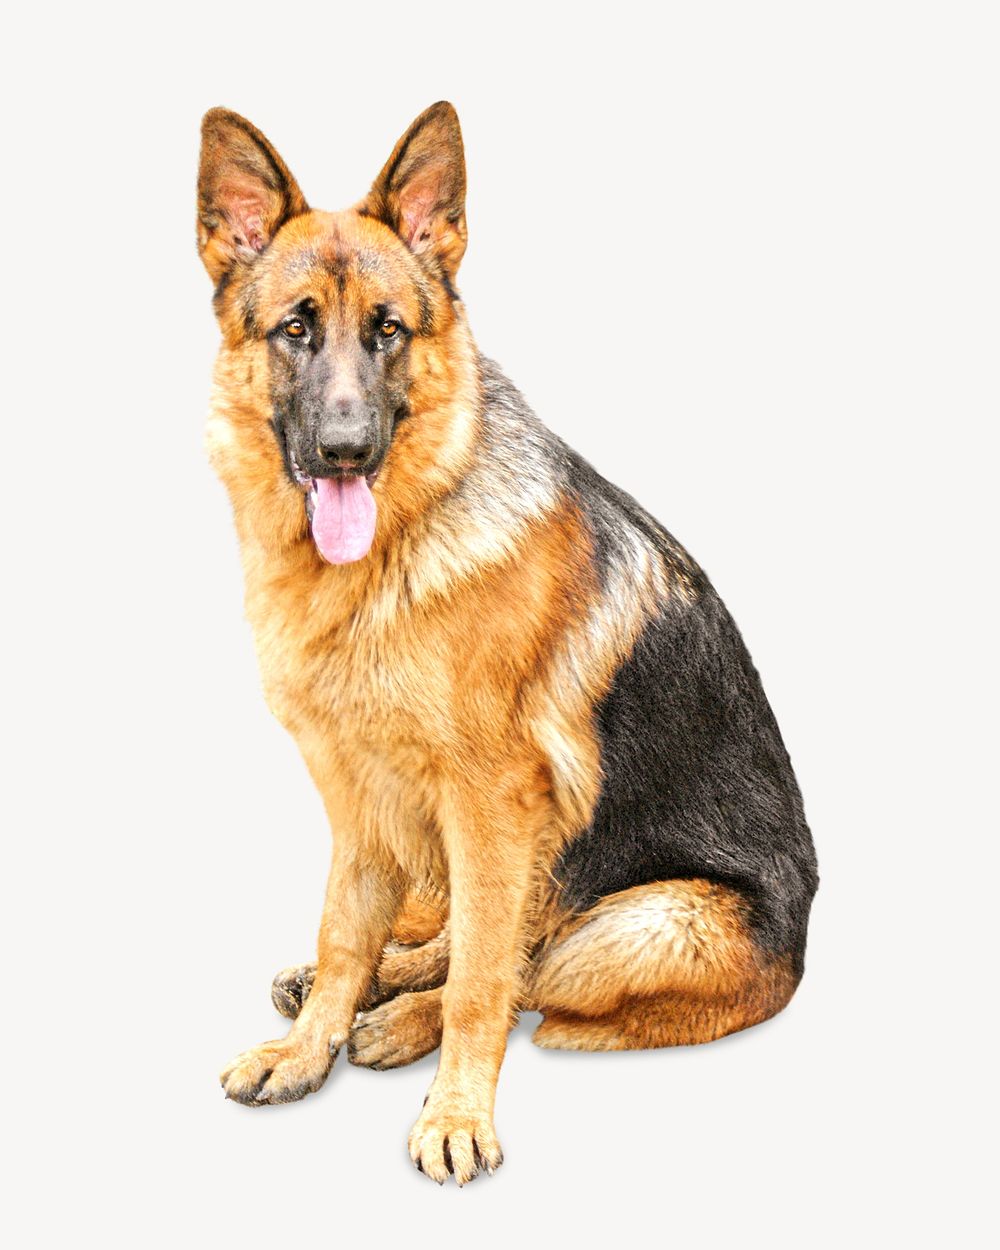 German shepherd dog image on white